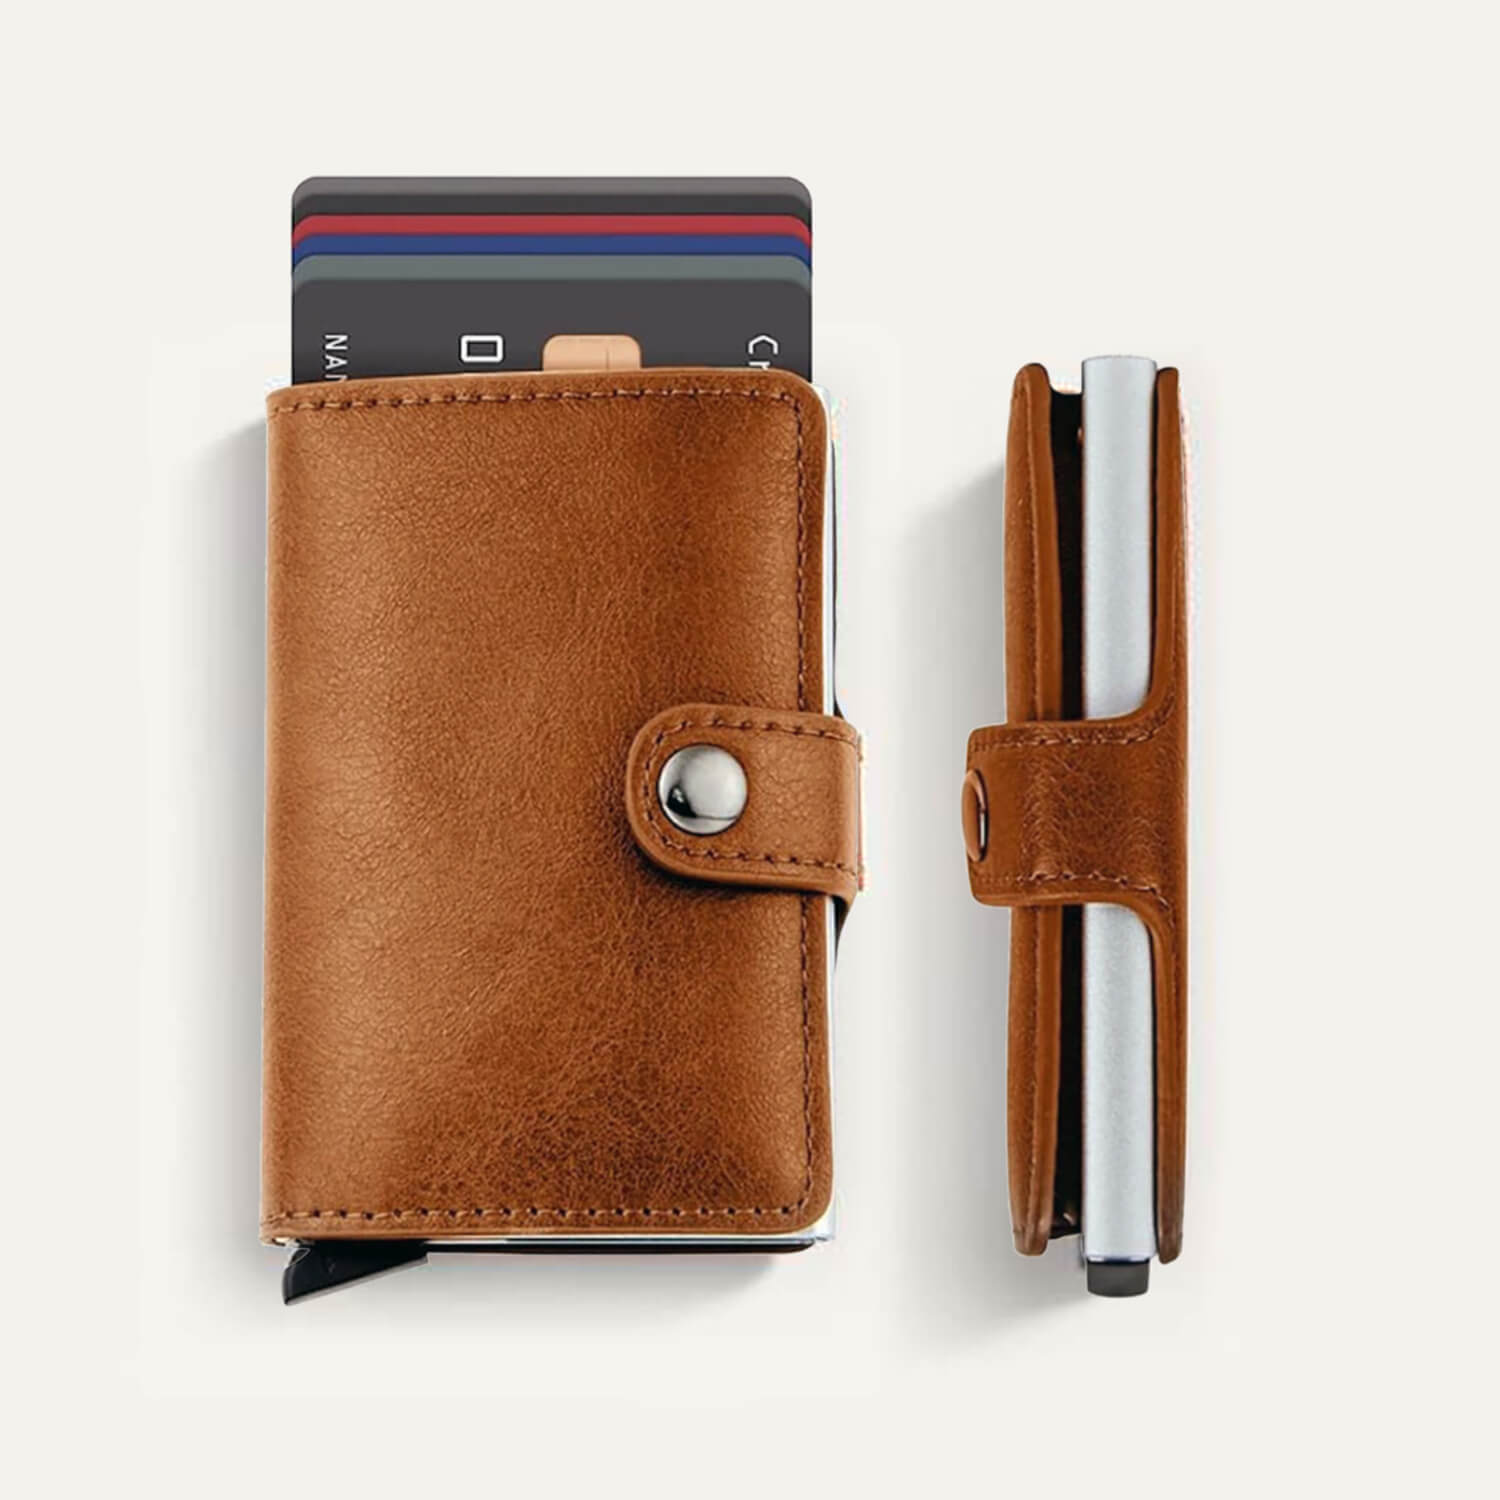 Slim Credit Card Holder Leather Wallet -Minimalist Design